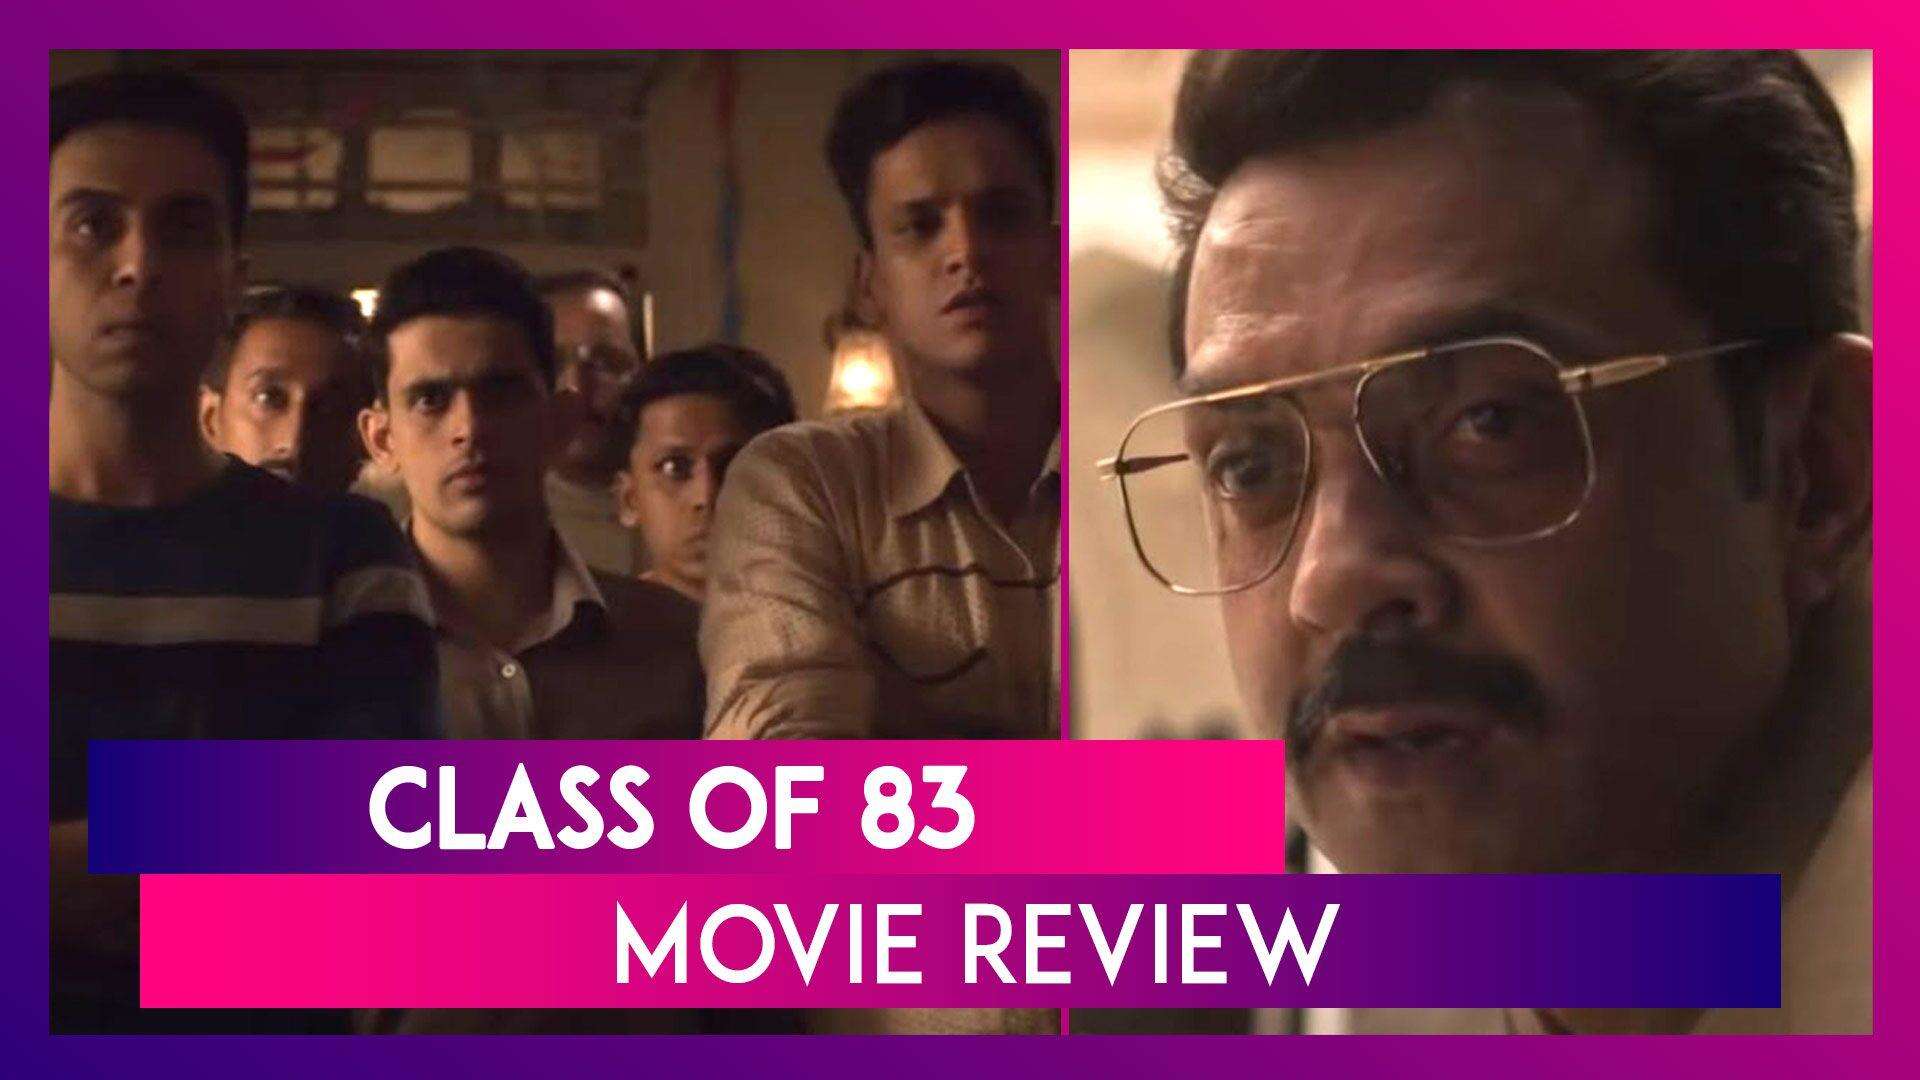 Class of 83 Review : बॉबी की दमदार एक्टिंग और अच्छी कहानी का मिश्रण है यह फ़िल्म